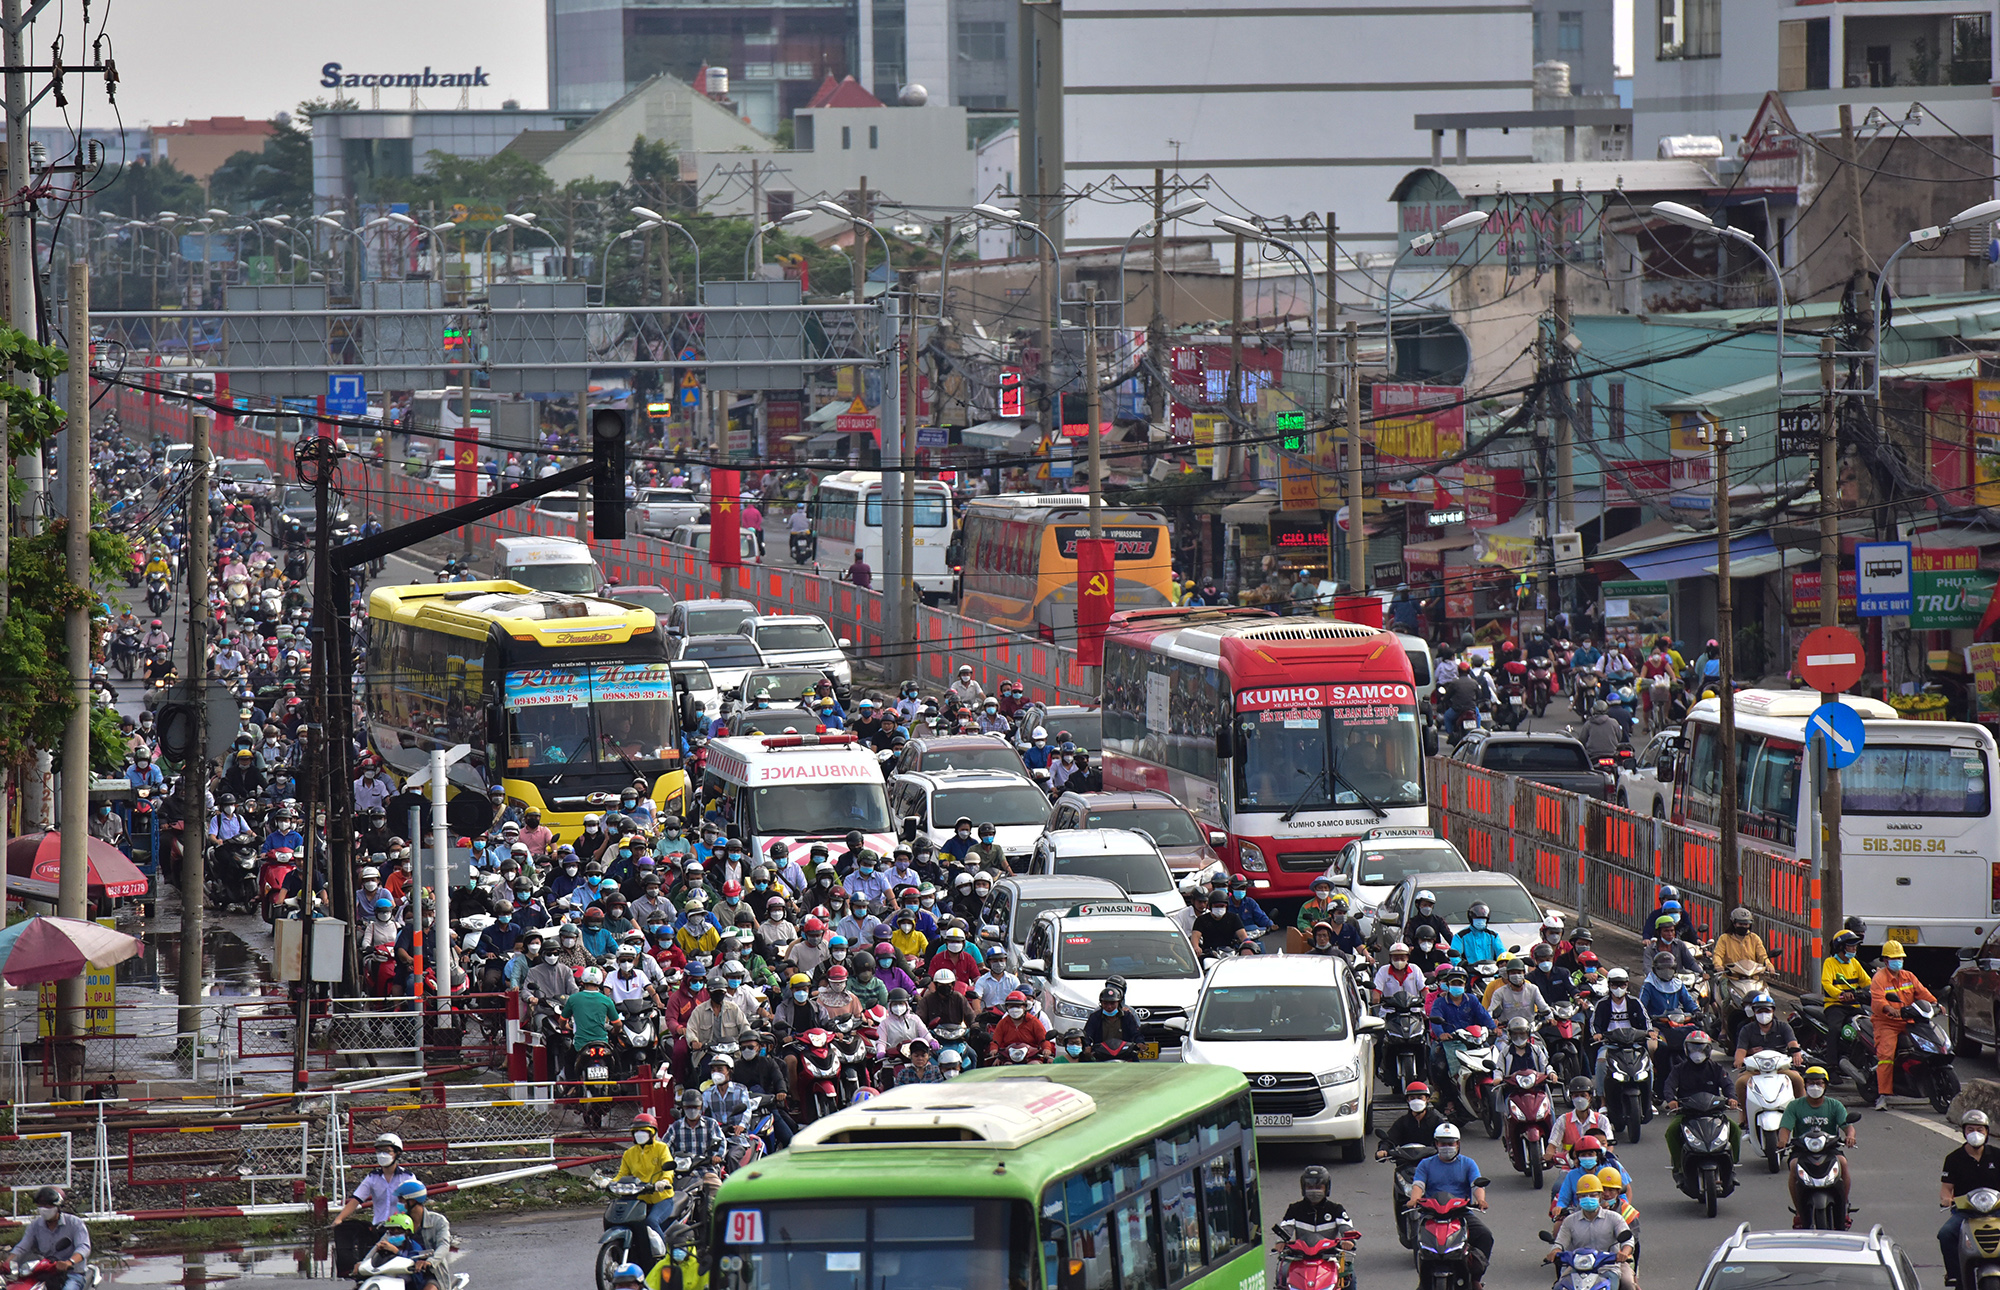 Hà Nội, TP.HCM lại tắc đường kinh hoàng sau nghỉ lễ, người dân chật vật tới nơi làm việc - 19